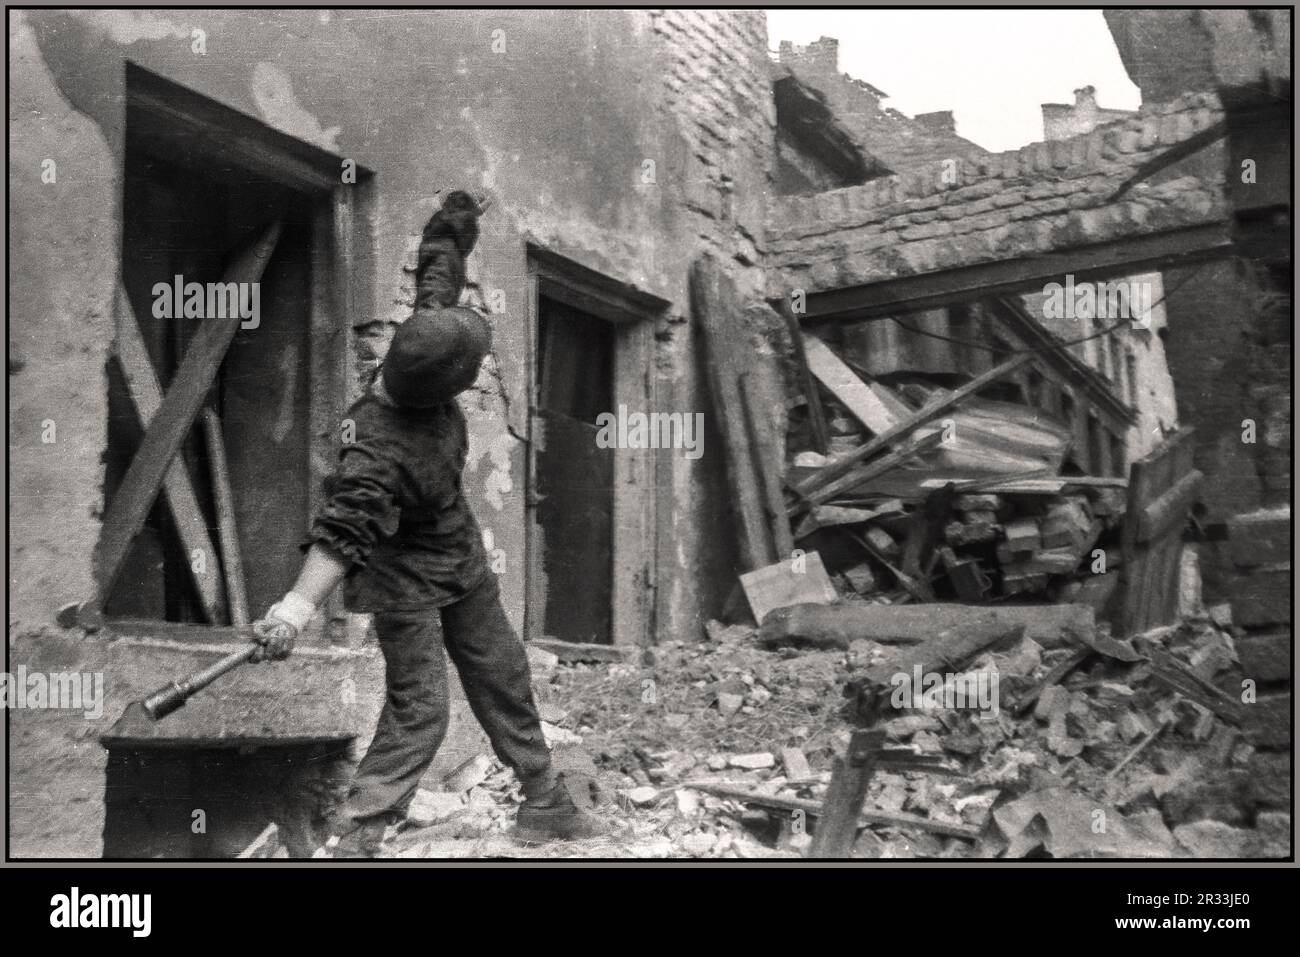 RÉSISTANCE POLONAISE WW2 révolte de Varsovie: 1945 Jerzy Siwiec 'Jur' de la compagnie 'Anna' de batallion 'Gustaw' en face de la maison de ville sur la rue Ślepa dans la vieille ville, lance une grenade Stielhandgranate-24 main sur le 'but' vers l'Allemagne nazie Wehrmacht et SS occupant des positions sur la place du château royal. Varsovie Pologne Seconde Guerre mondiale Banque D'Images